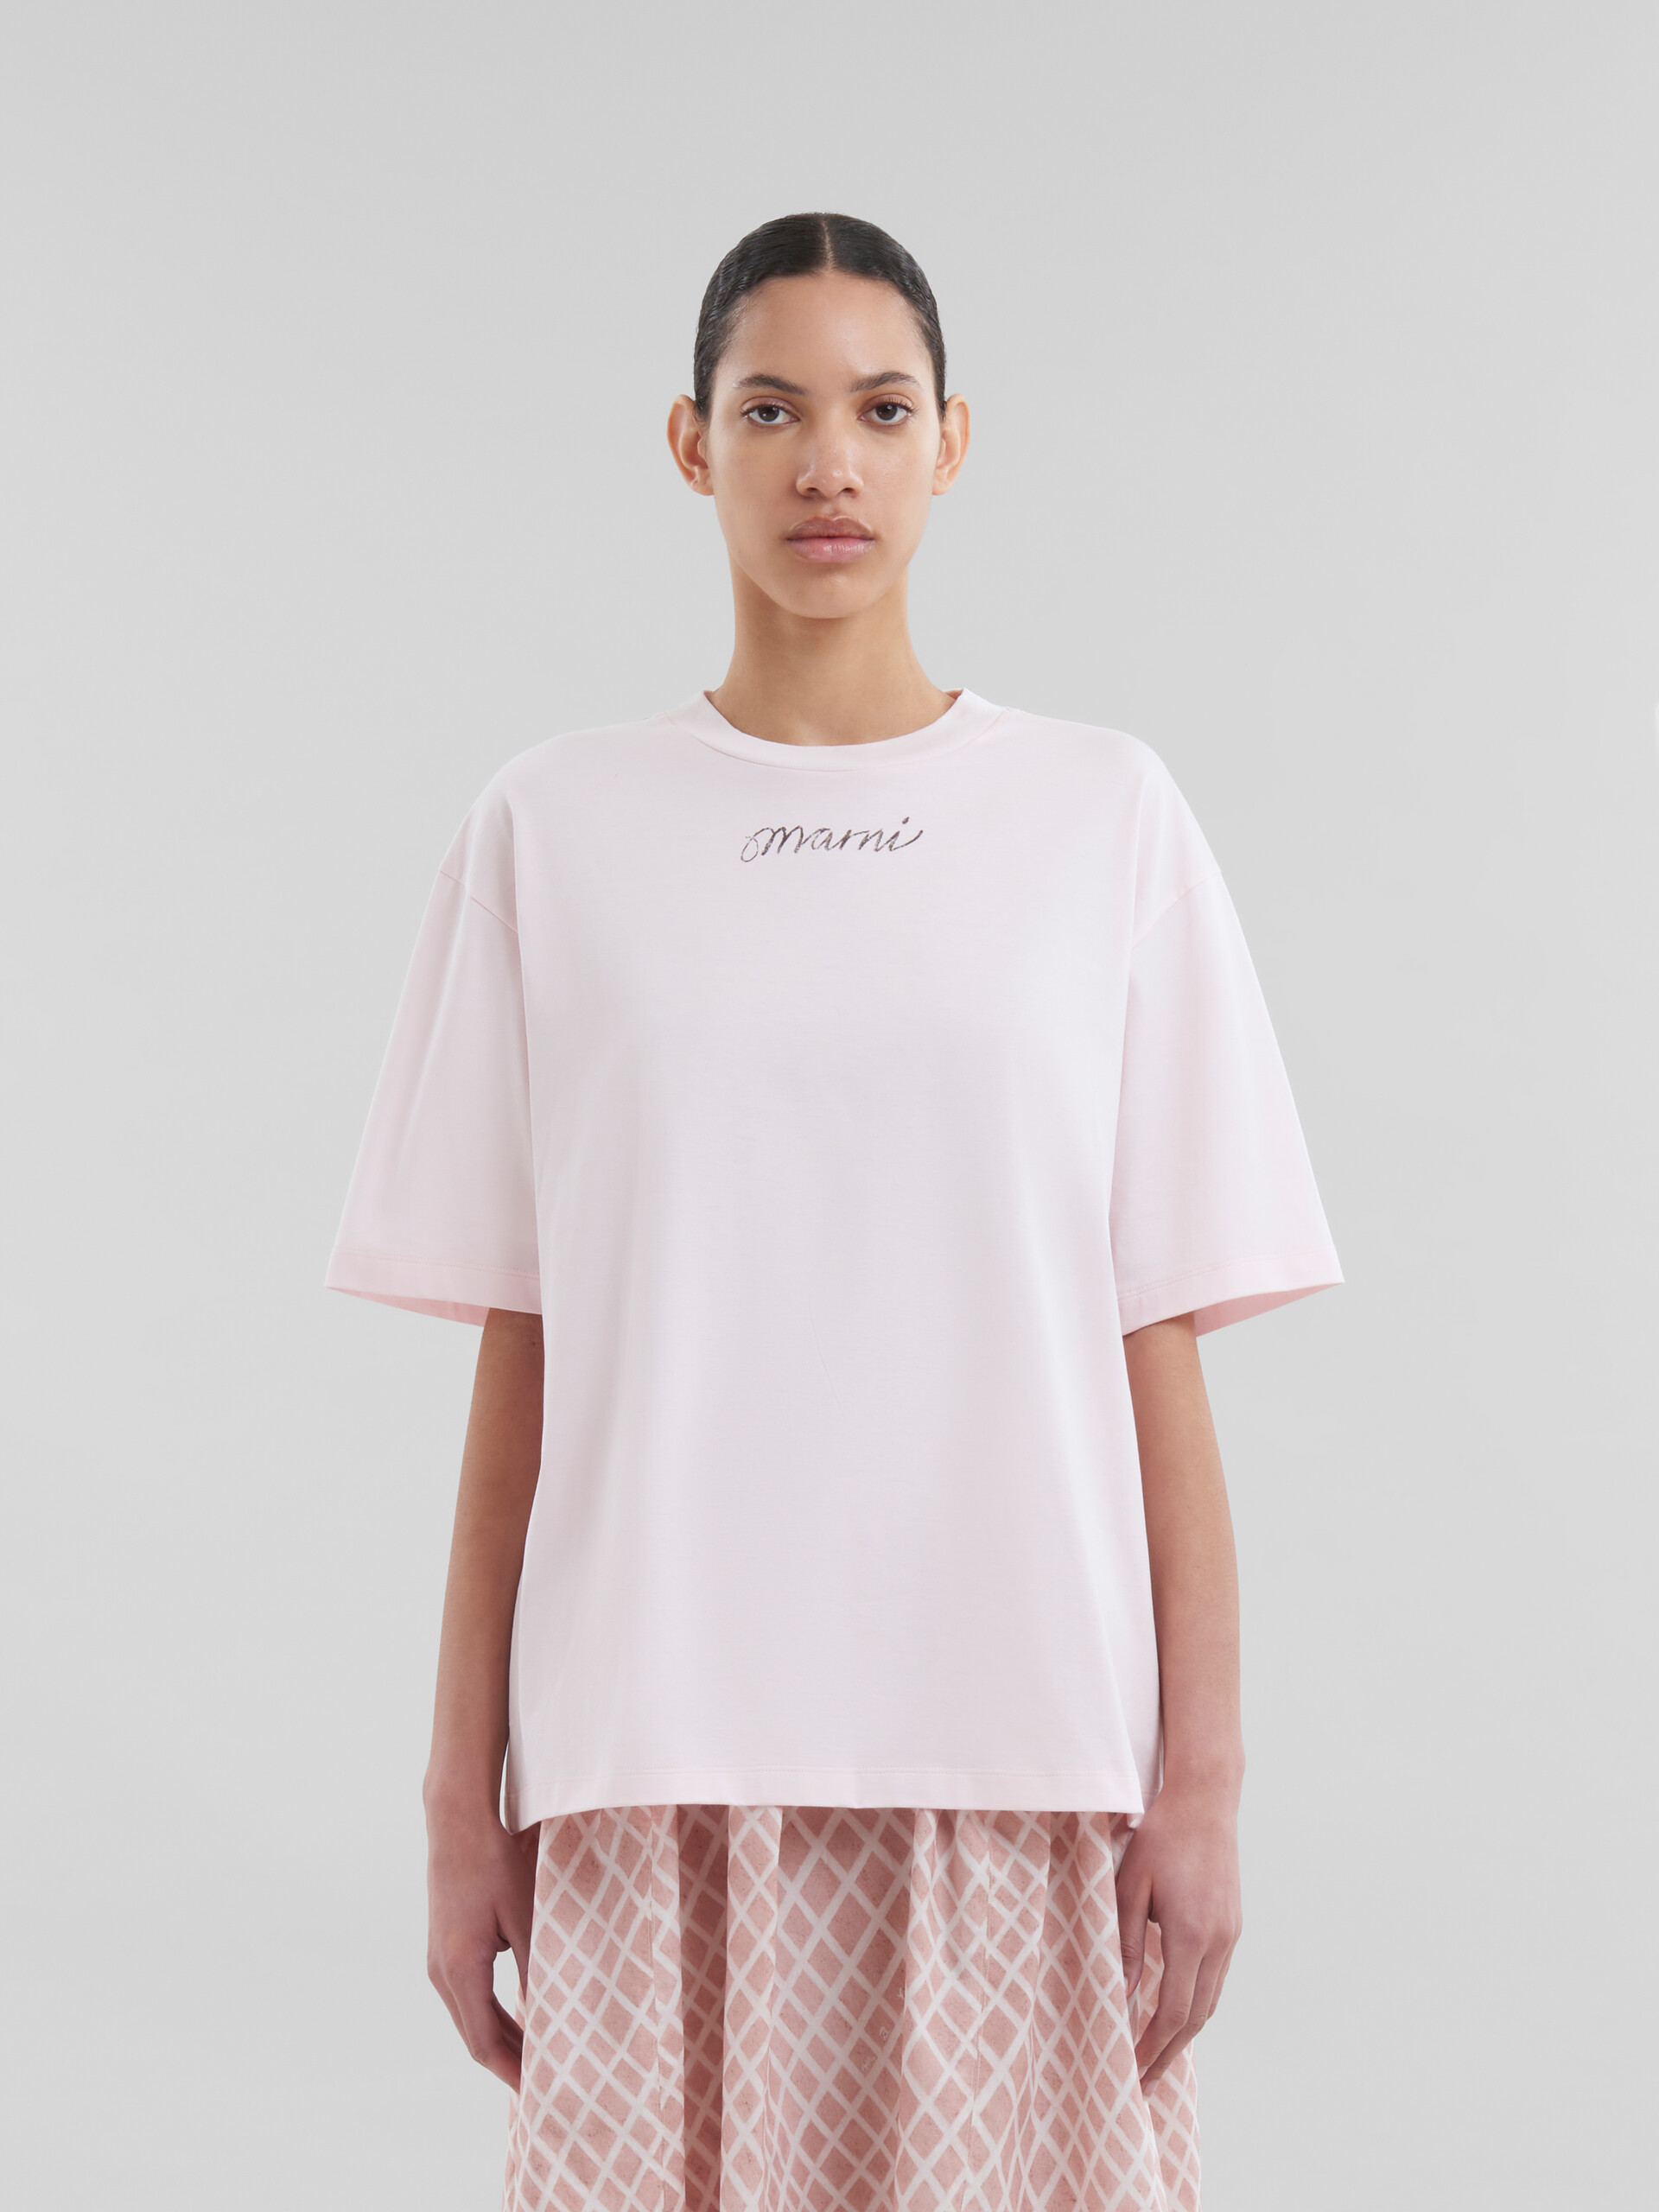 Camiseta de corte cuadrado rosa de algodón orgánico con logotipo repetido - Camisetas - Image 2